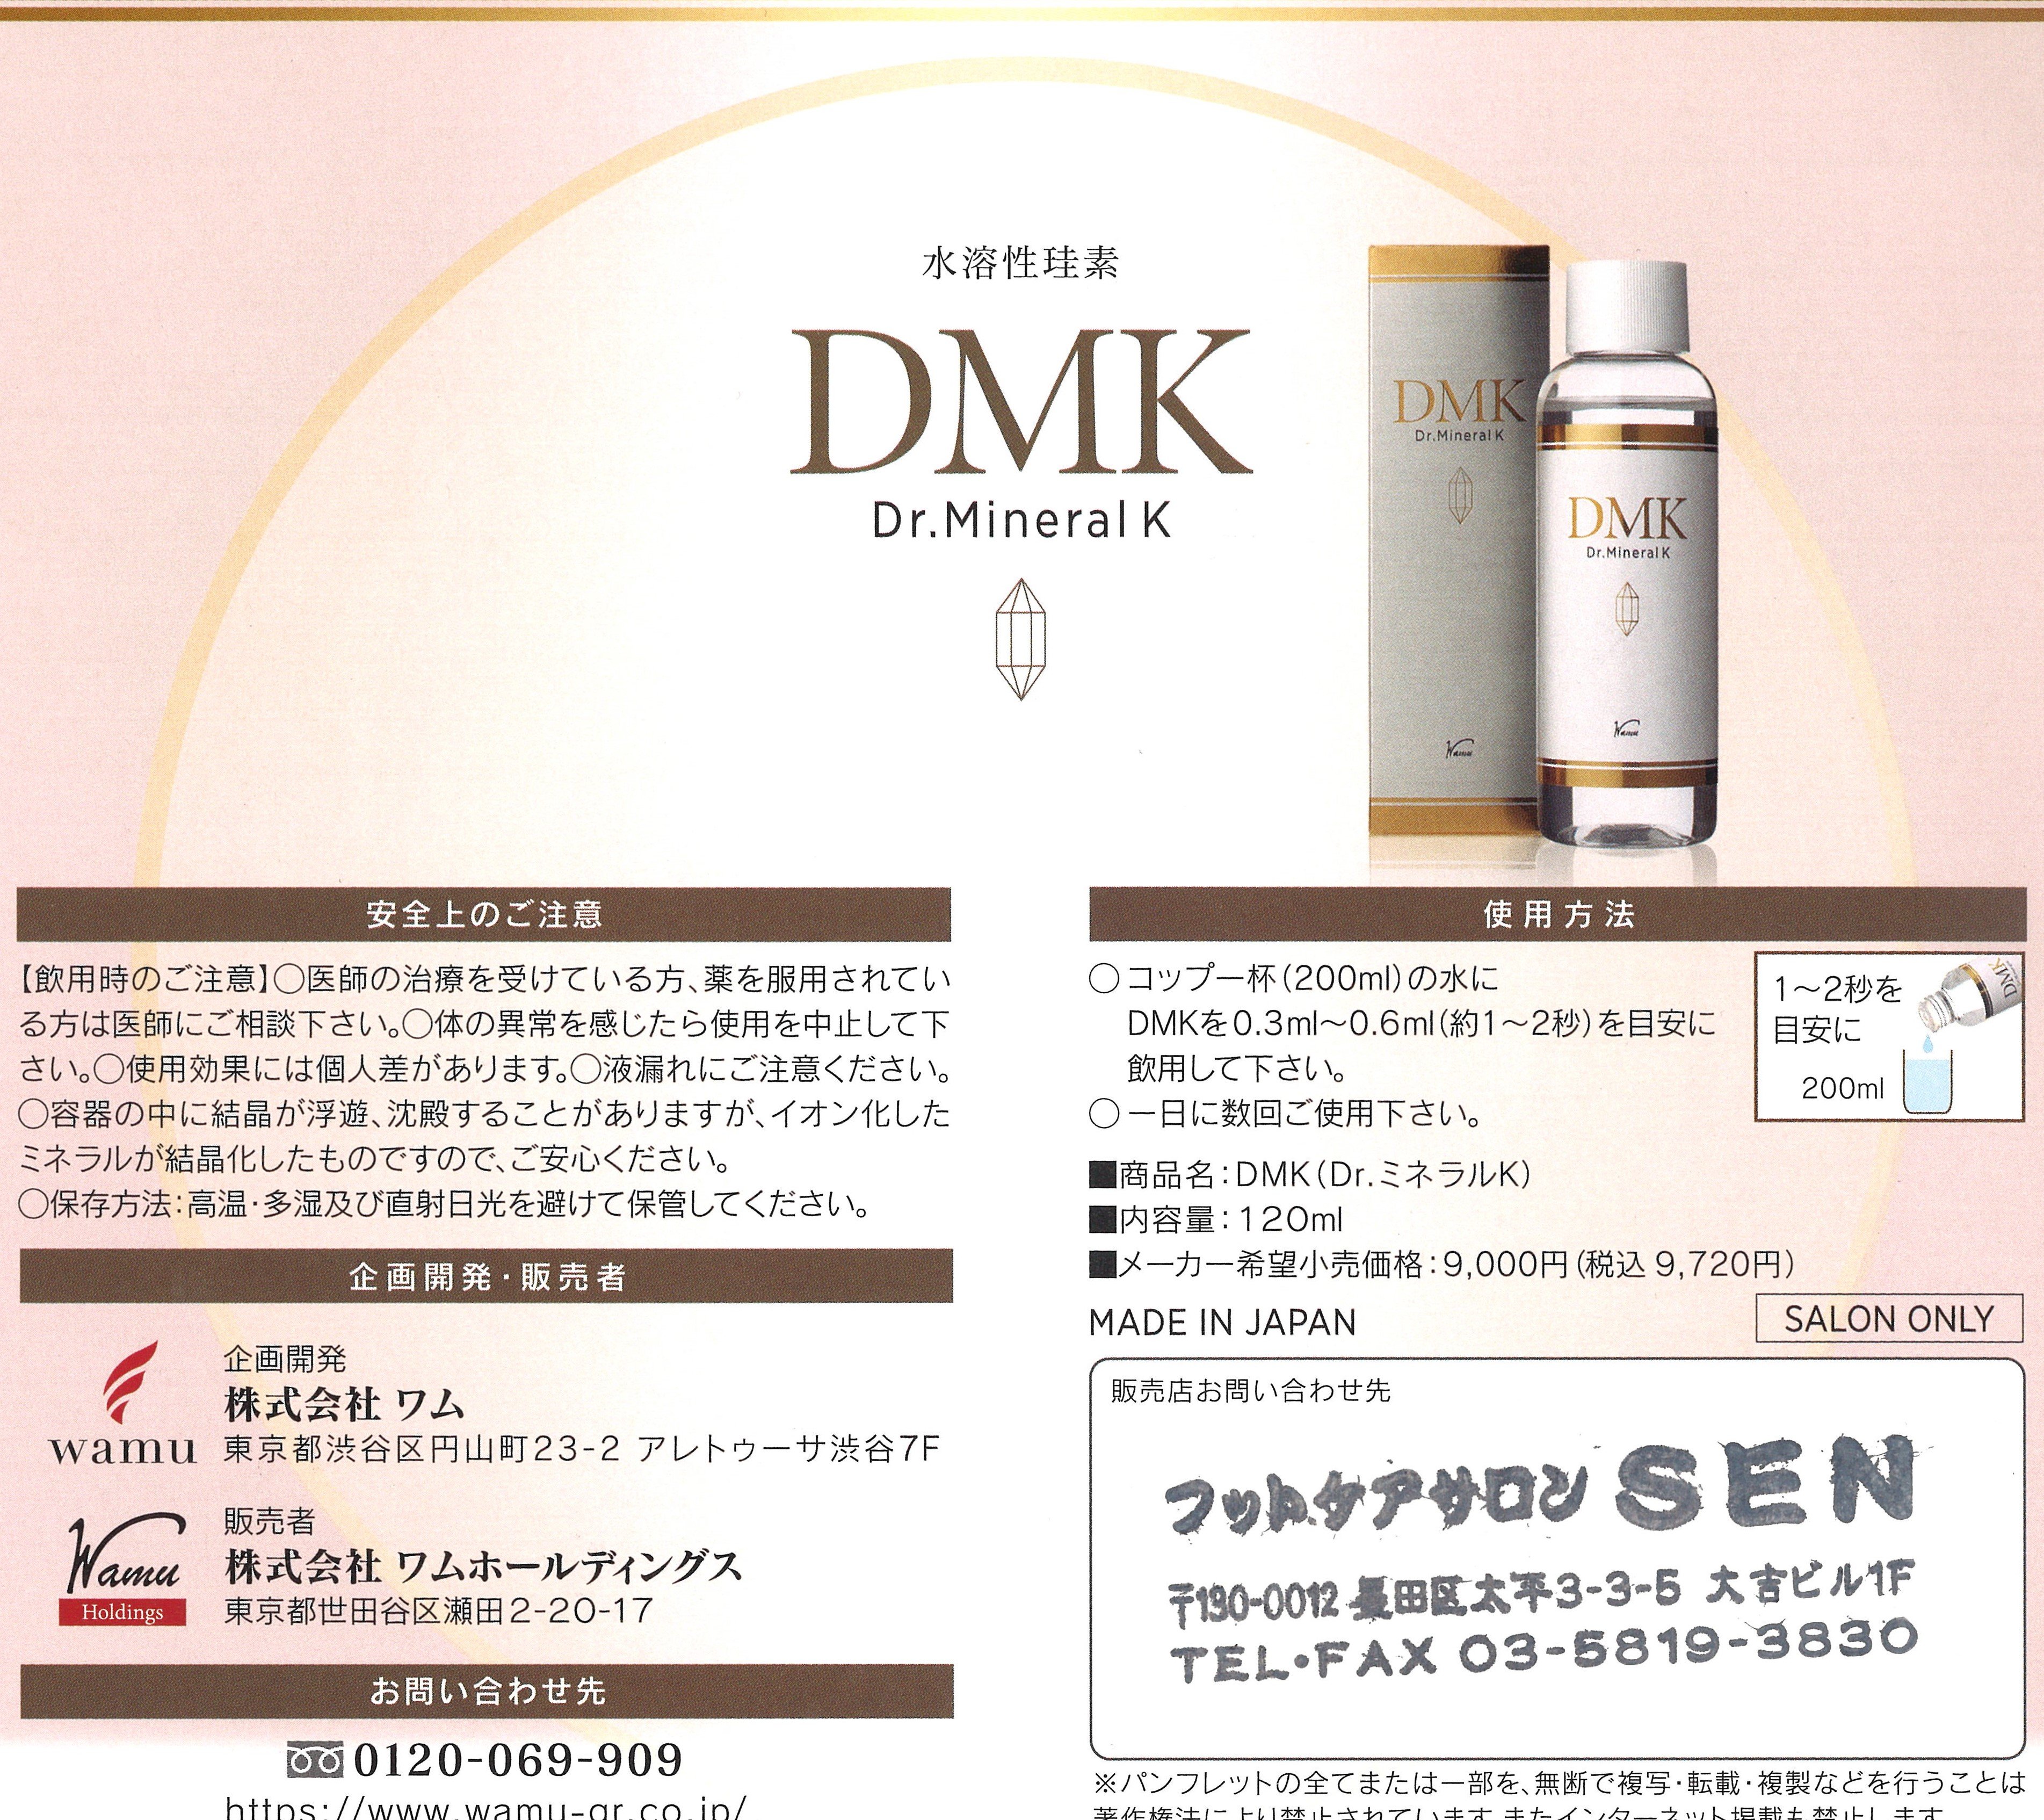 DMK(Dr.ミネラルK)スティック - 通販 - pinehotel.info